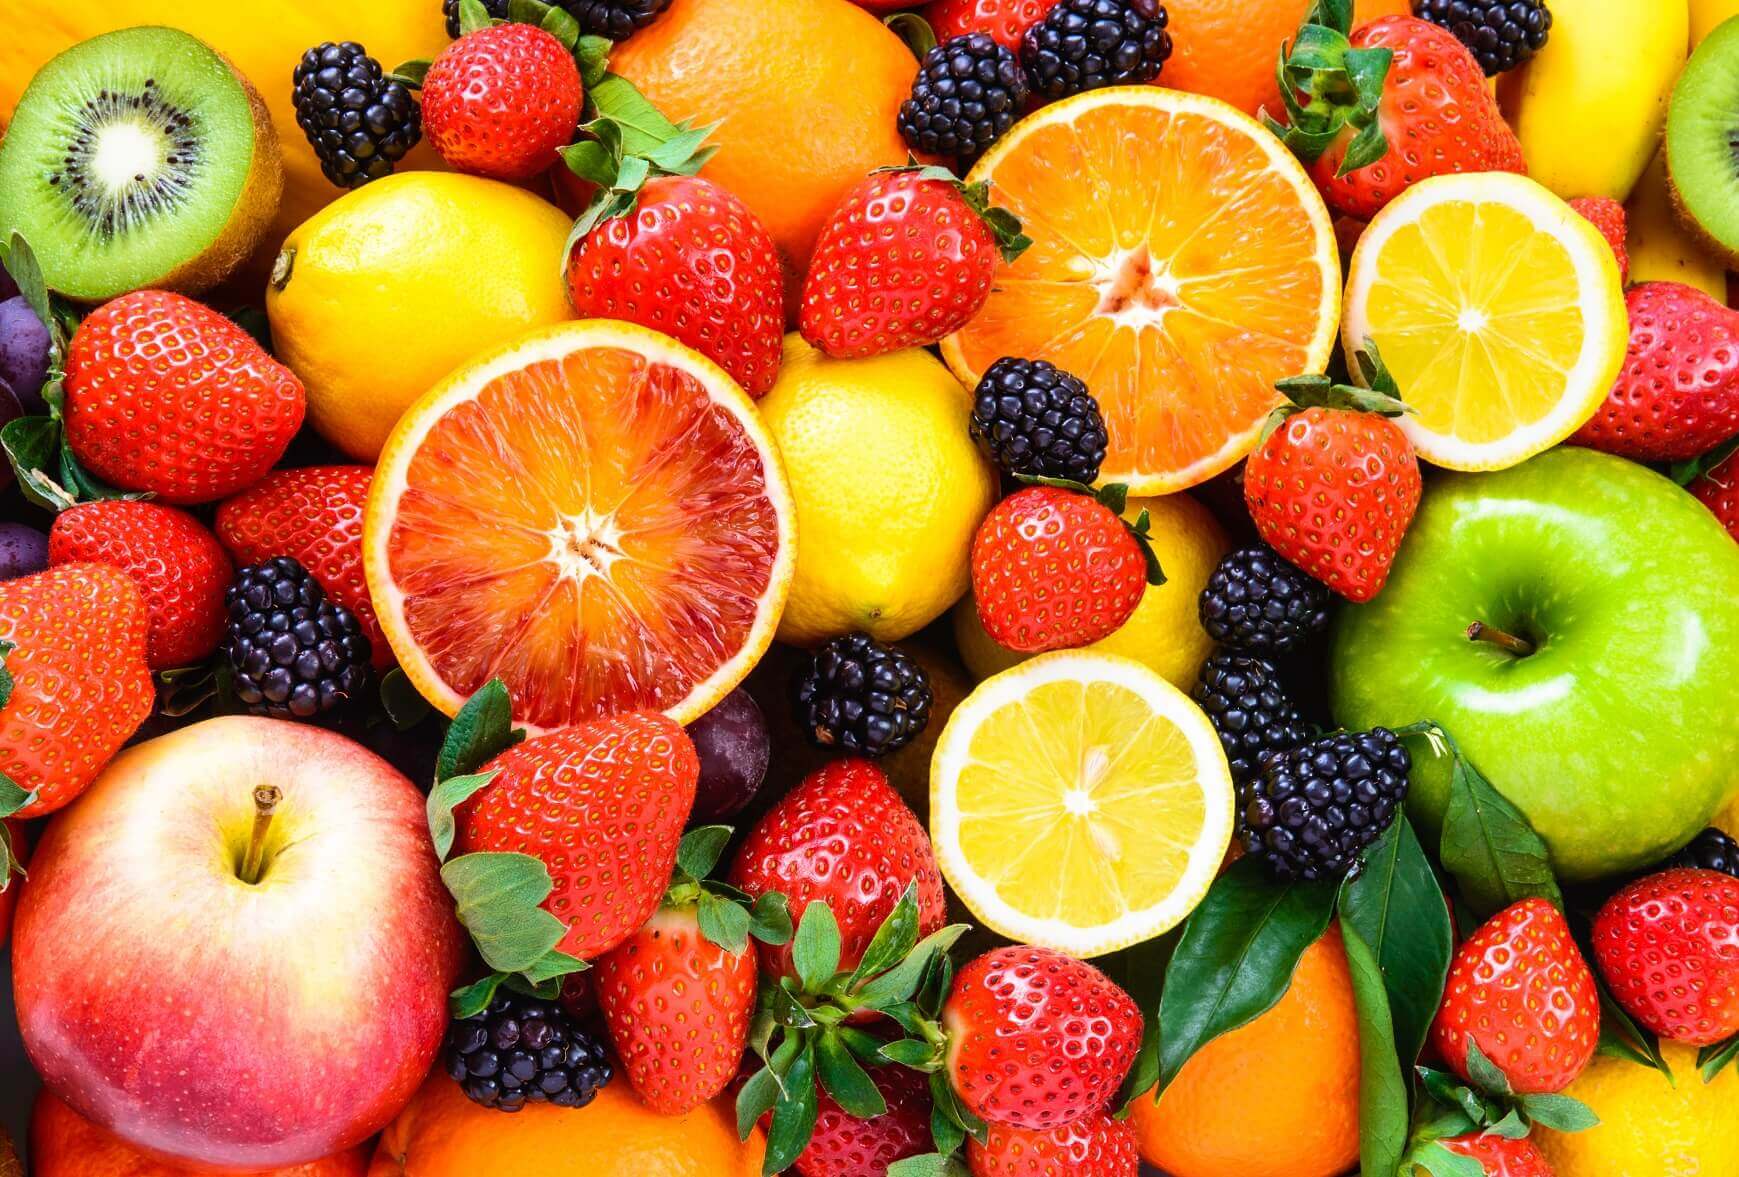 Cele mai sănătoase fructe din lume